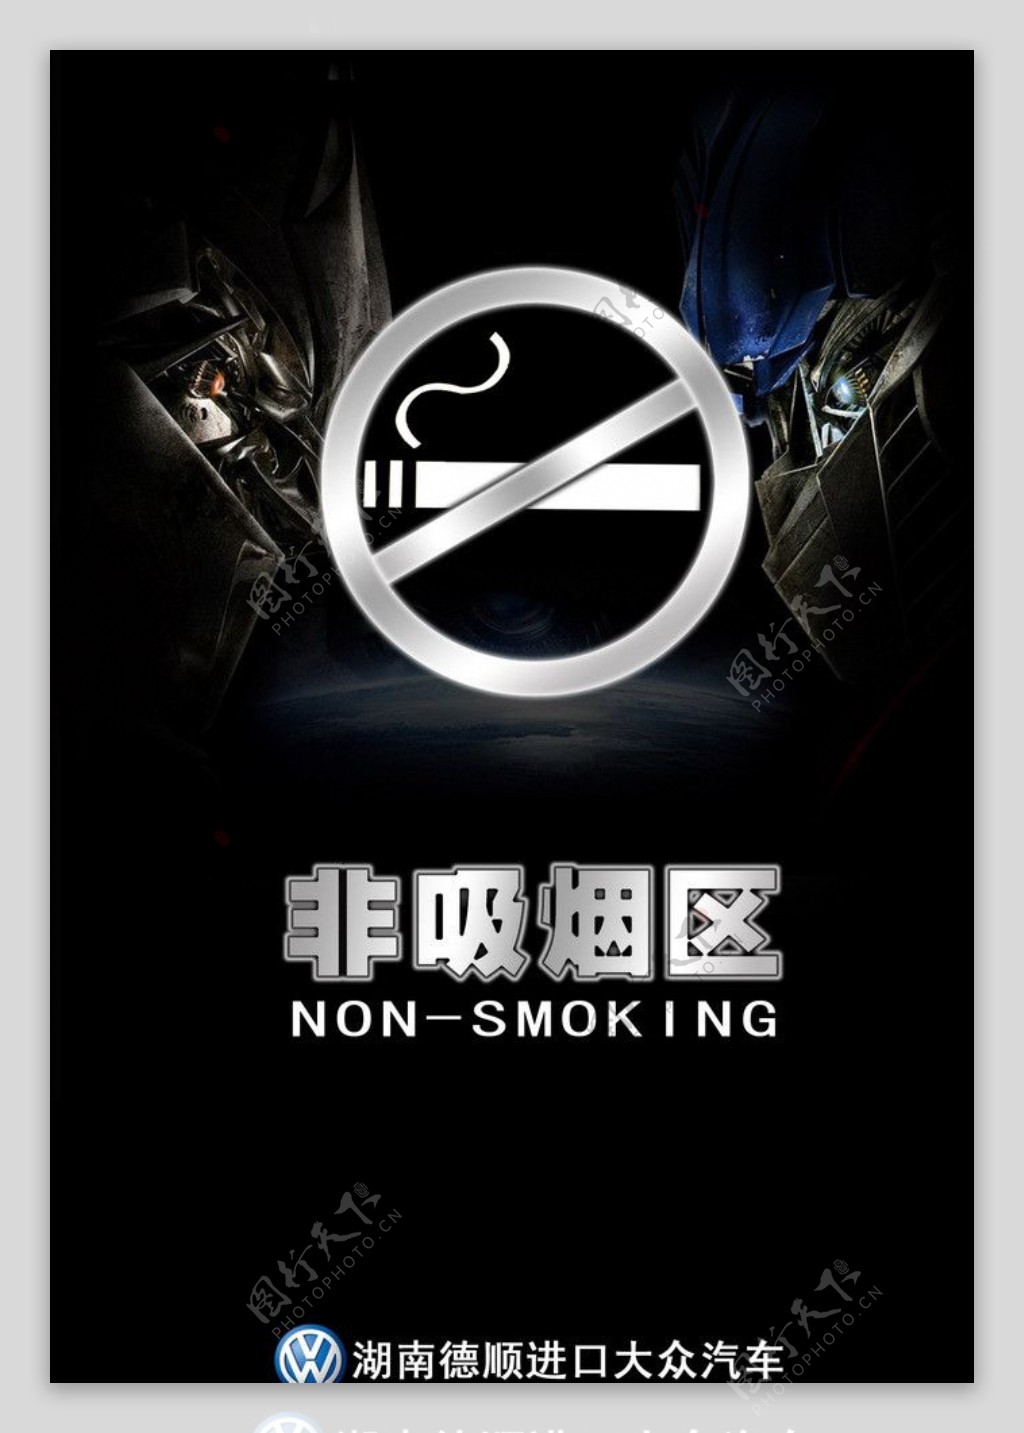 非吸烟区图片